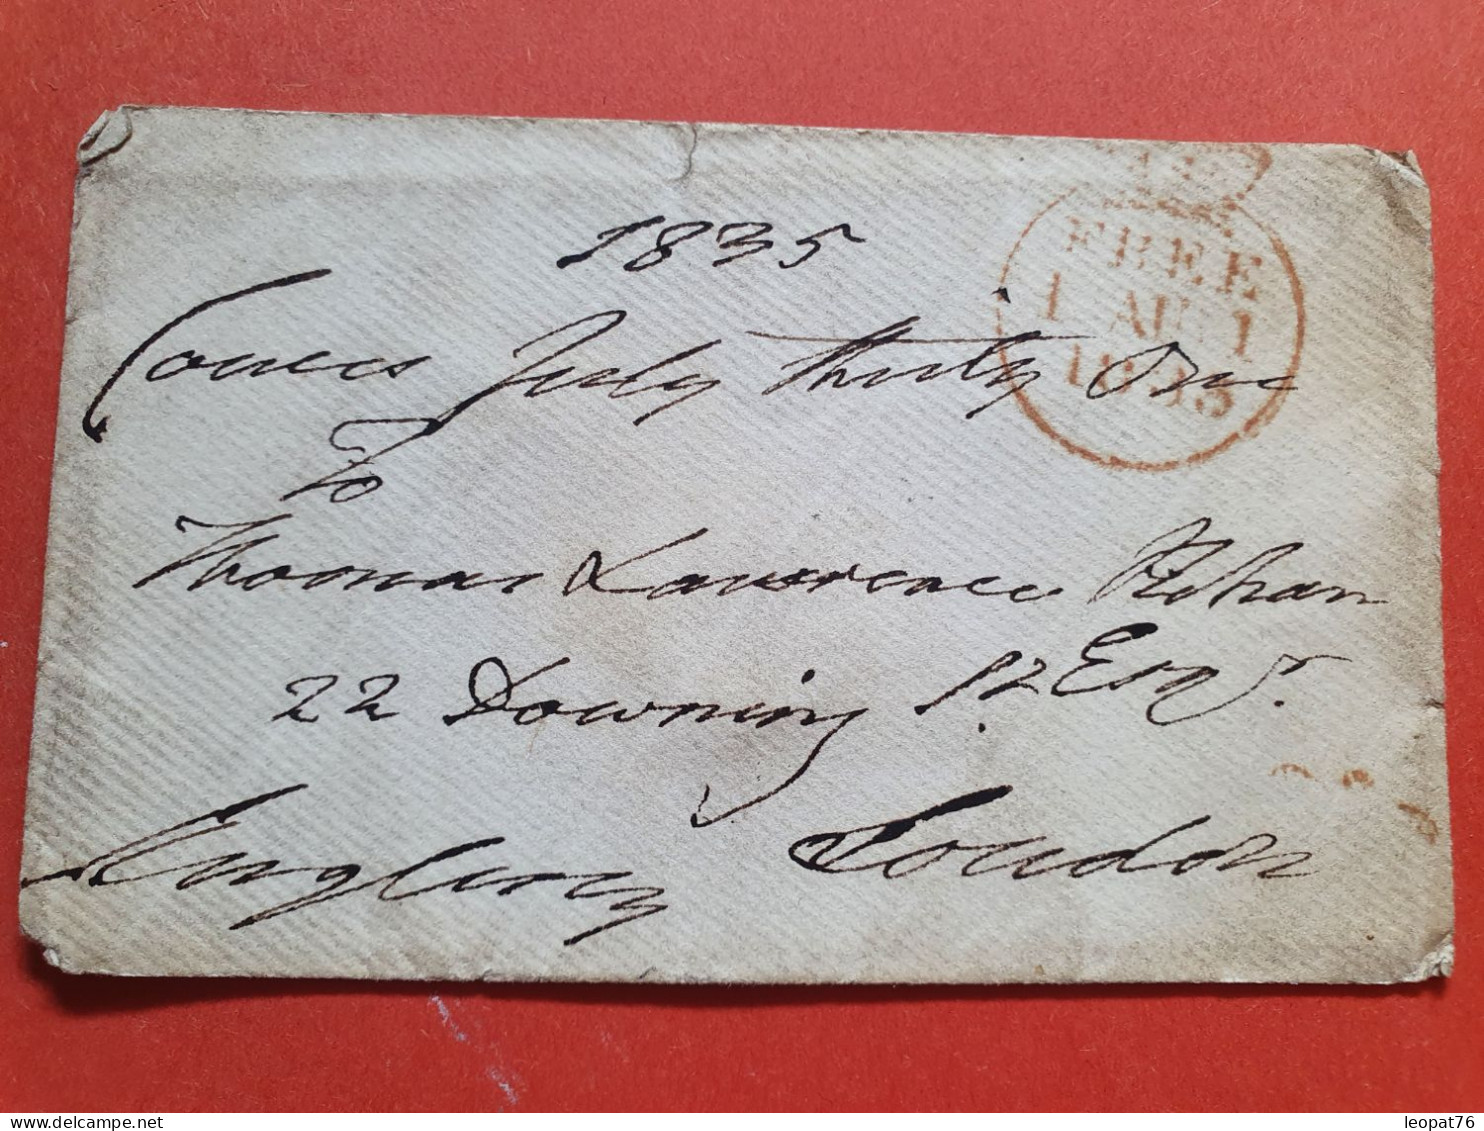 GB - Enveloppe En Franchise Postale Pour Londres En 1835 - Réf J 217 - ...-1840 Préphilatélie